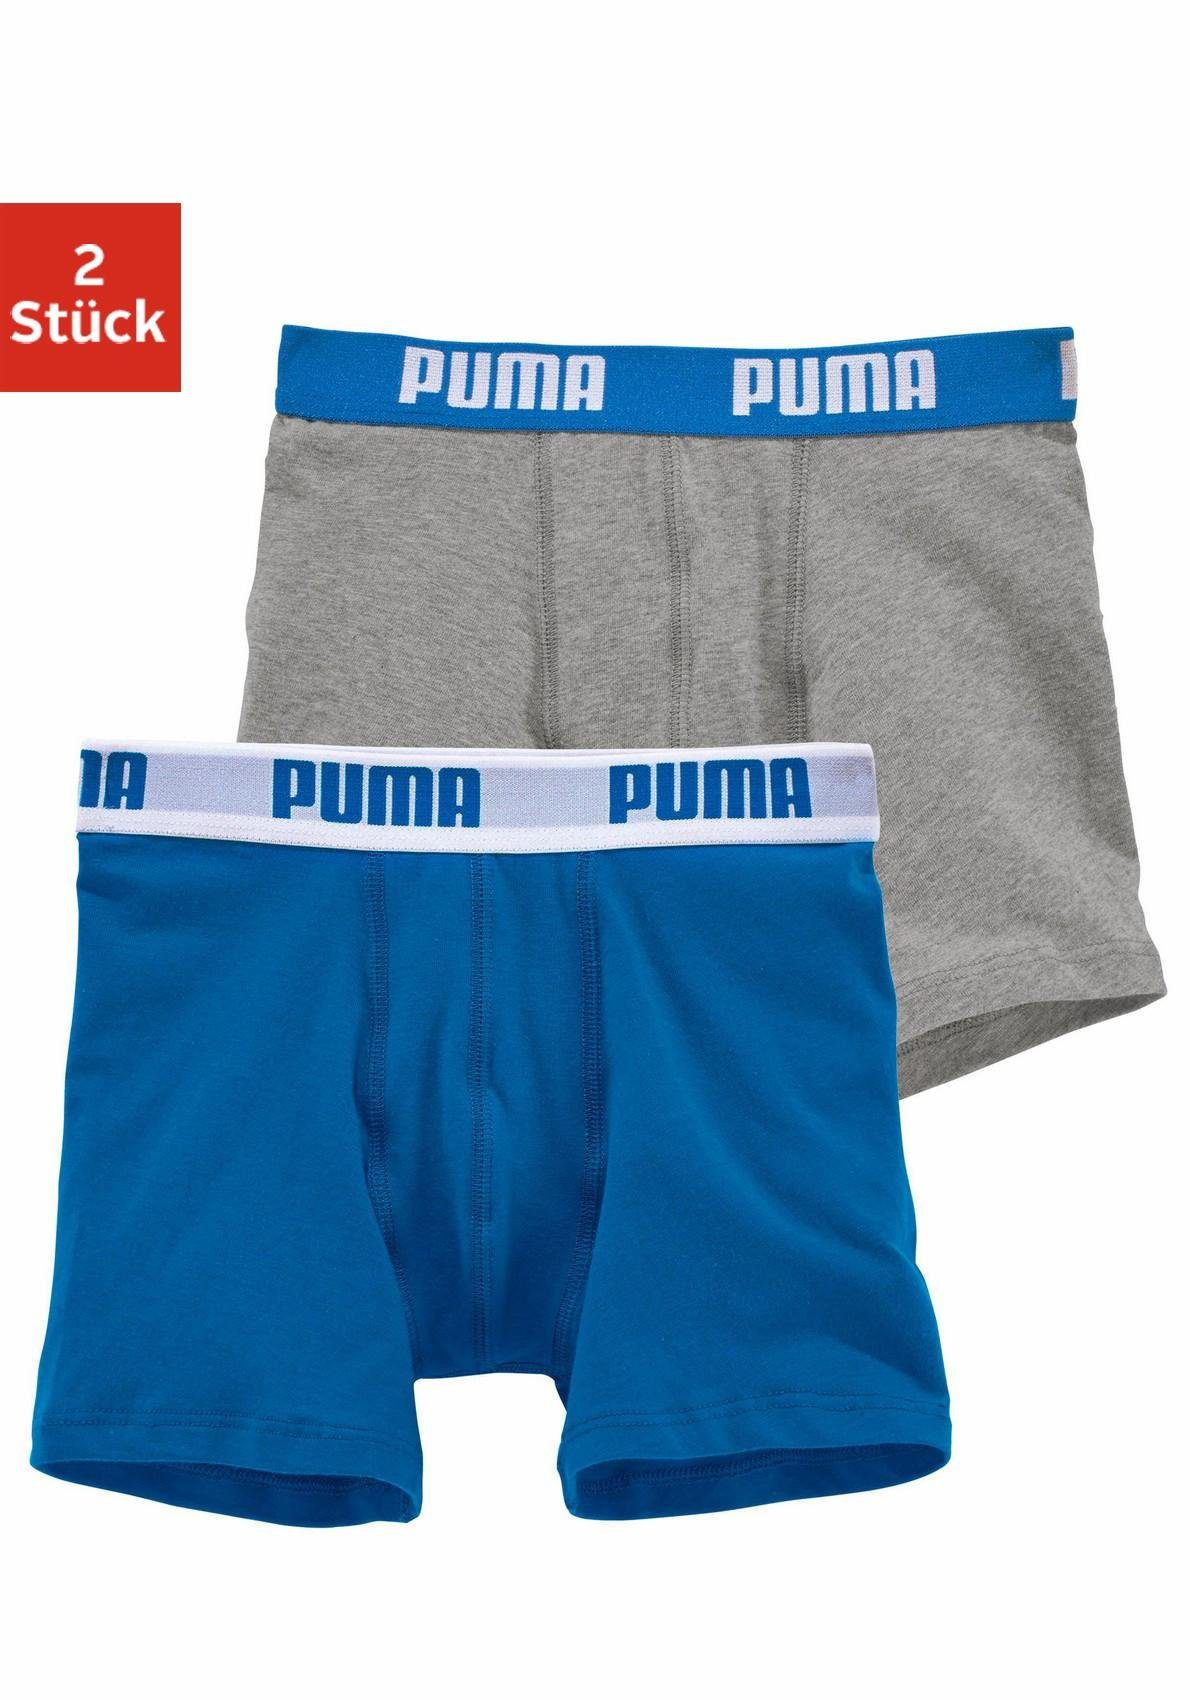 PUMA Boxer (Packung, 2-St) aus elastischer Baumwolle für Jungen grau-meliert, blau